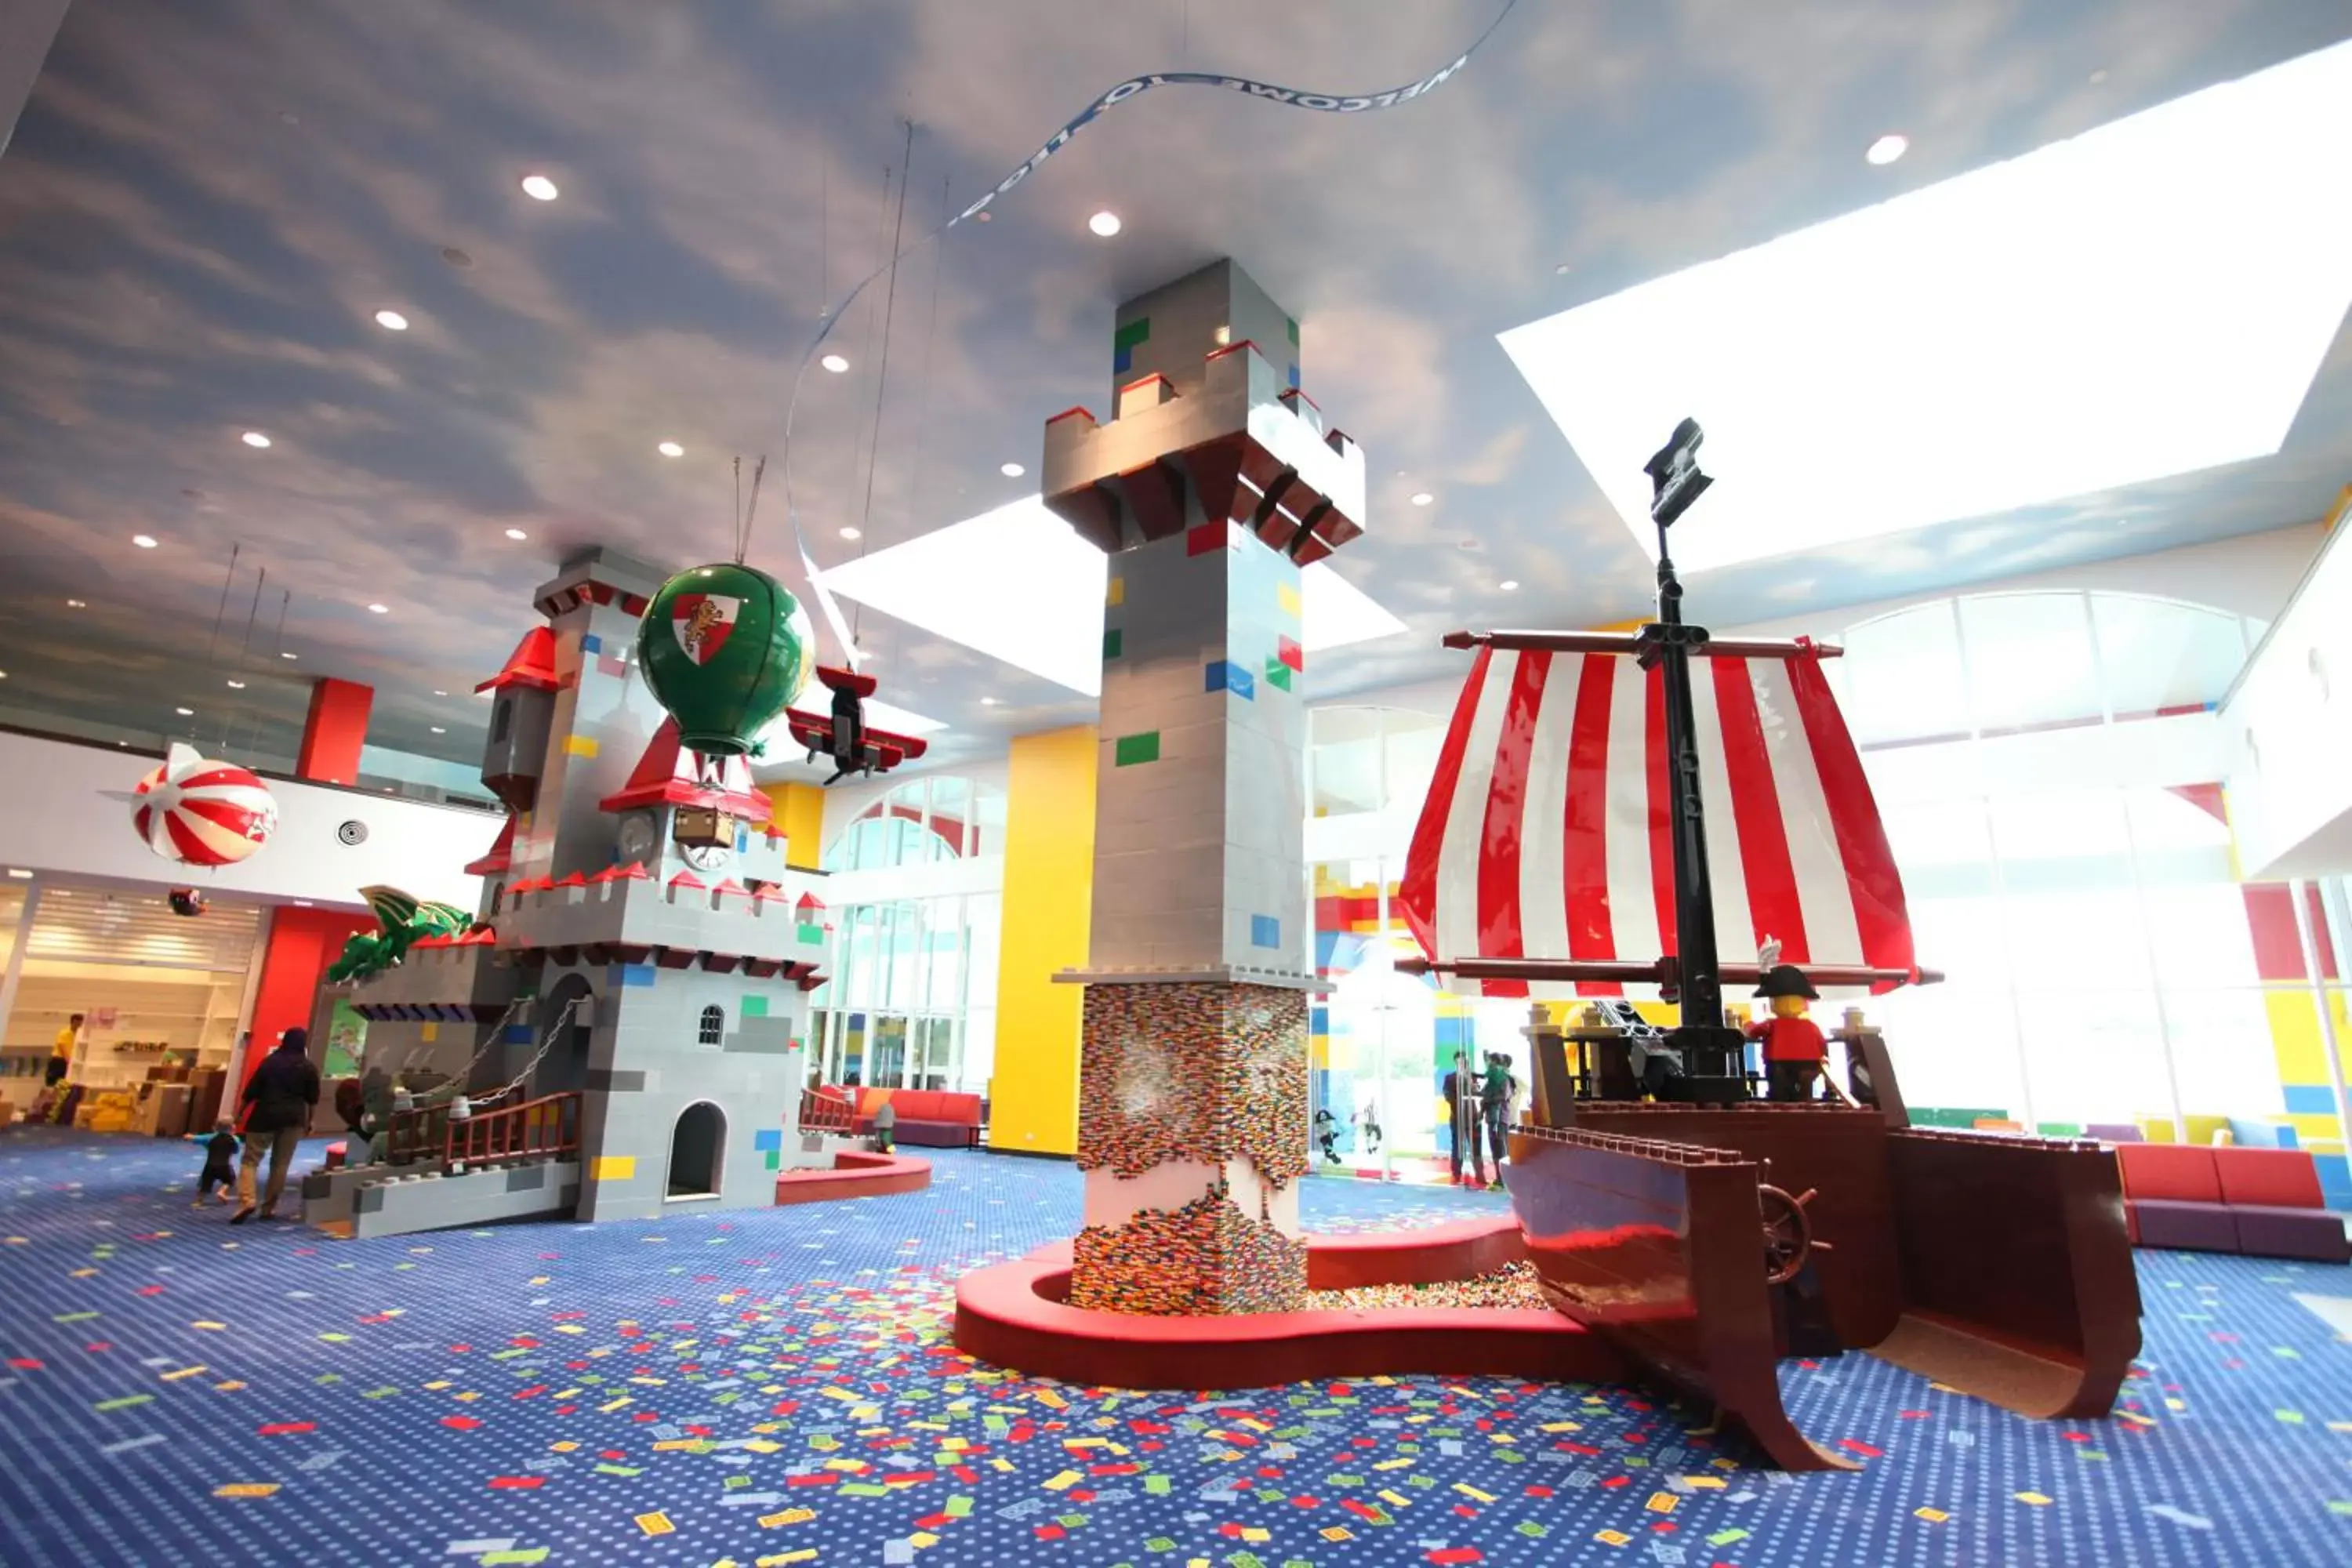 Lobby or reception in Legoland Malaysia Hotel